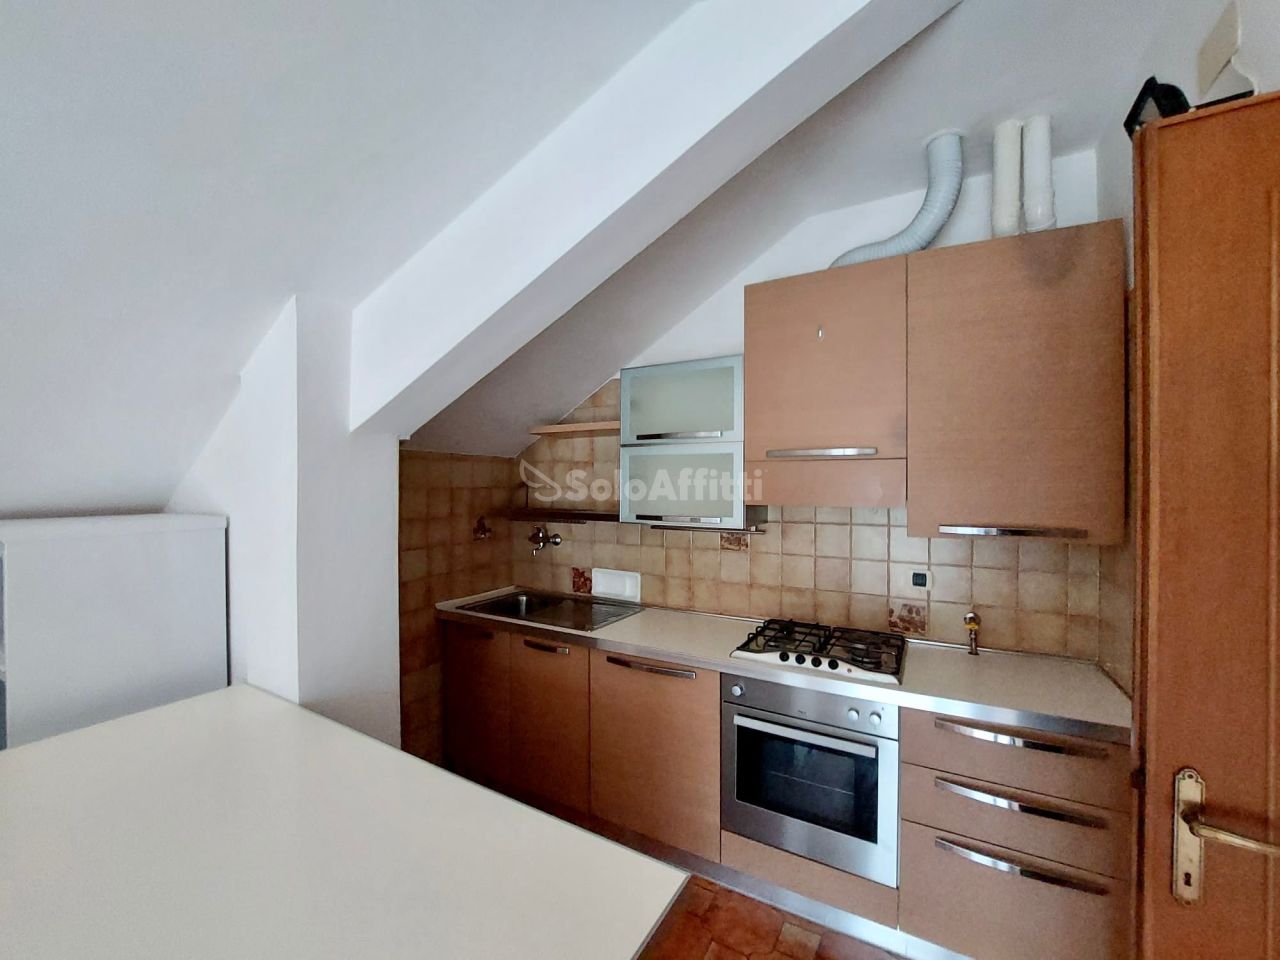 Appartamento in affitto a Moconesi, 2 locali, prezzo € 450 | PortaleAgenzieImmobiliari.it